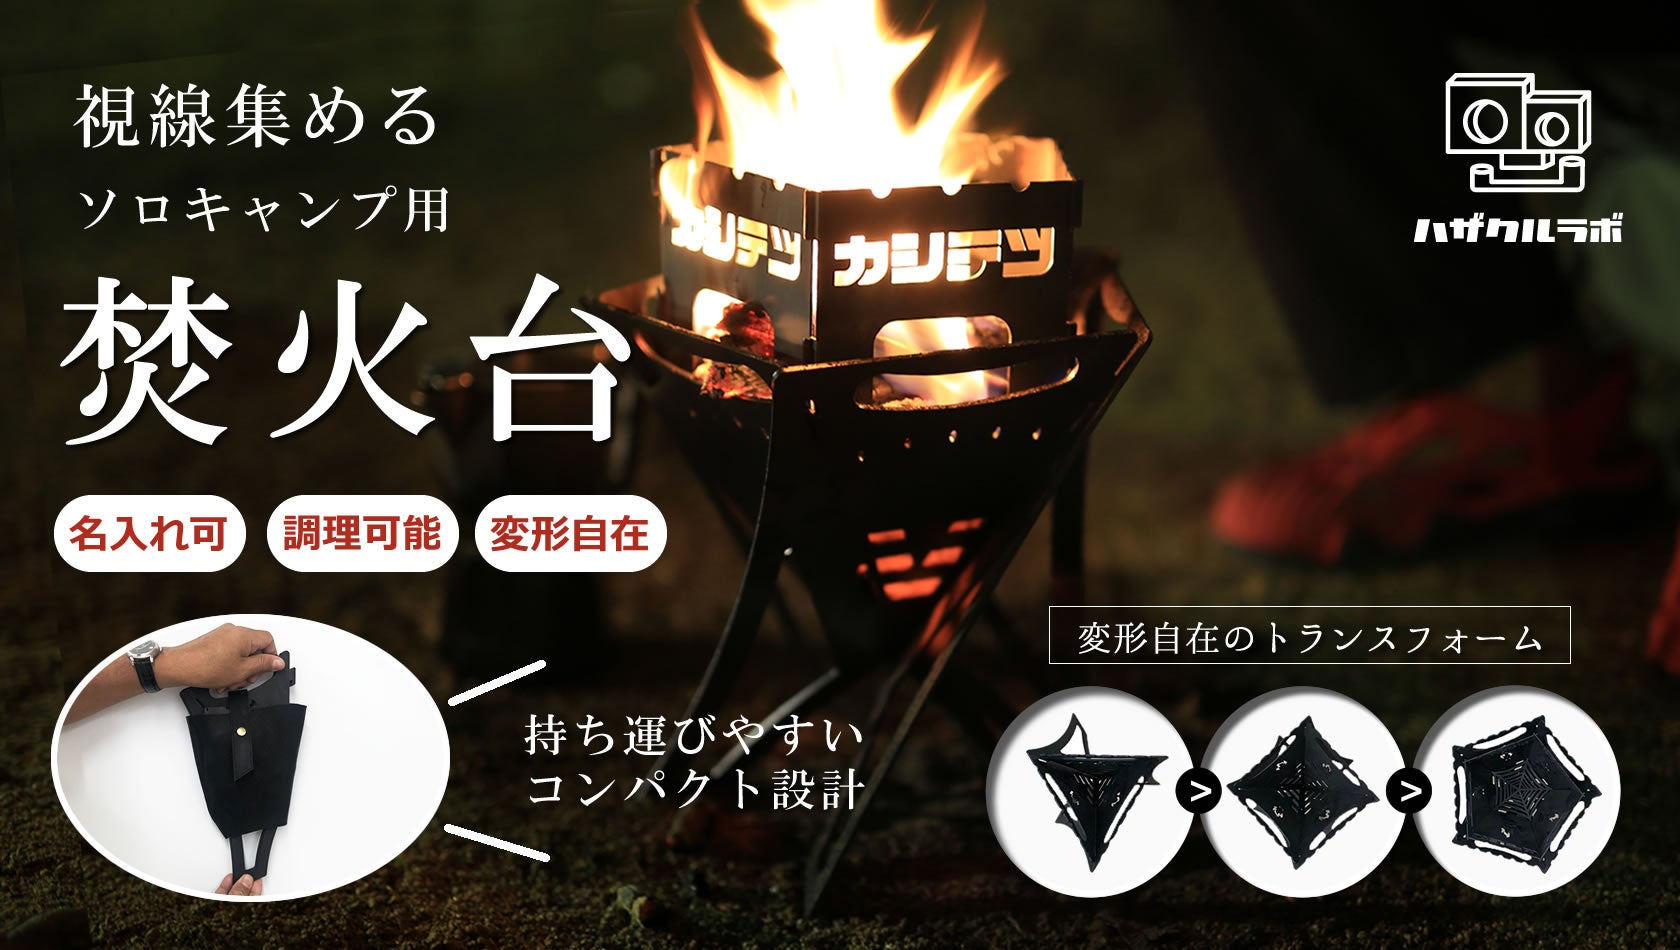 尼崎の鉄工所「柏木鉄工（カシテツ）」が端材をアップサイクルしたブランド「ハザクルラボ」を立ち上げ、第一弾として焚火台を販売するのサブ画像1